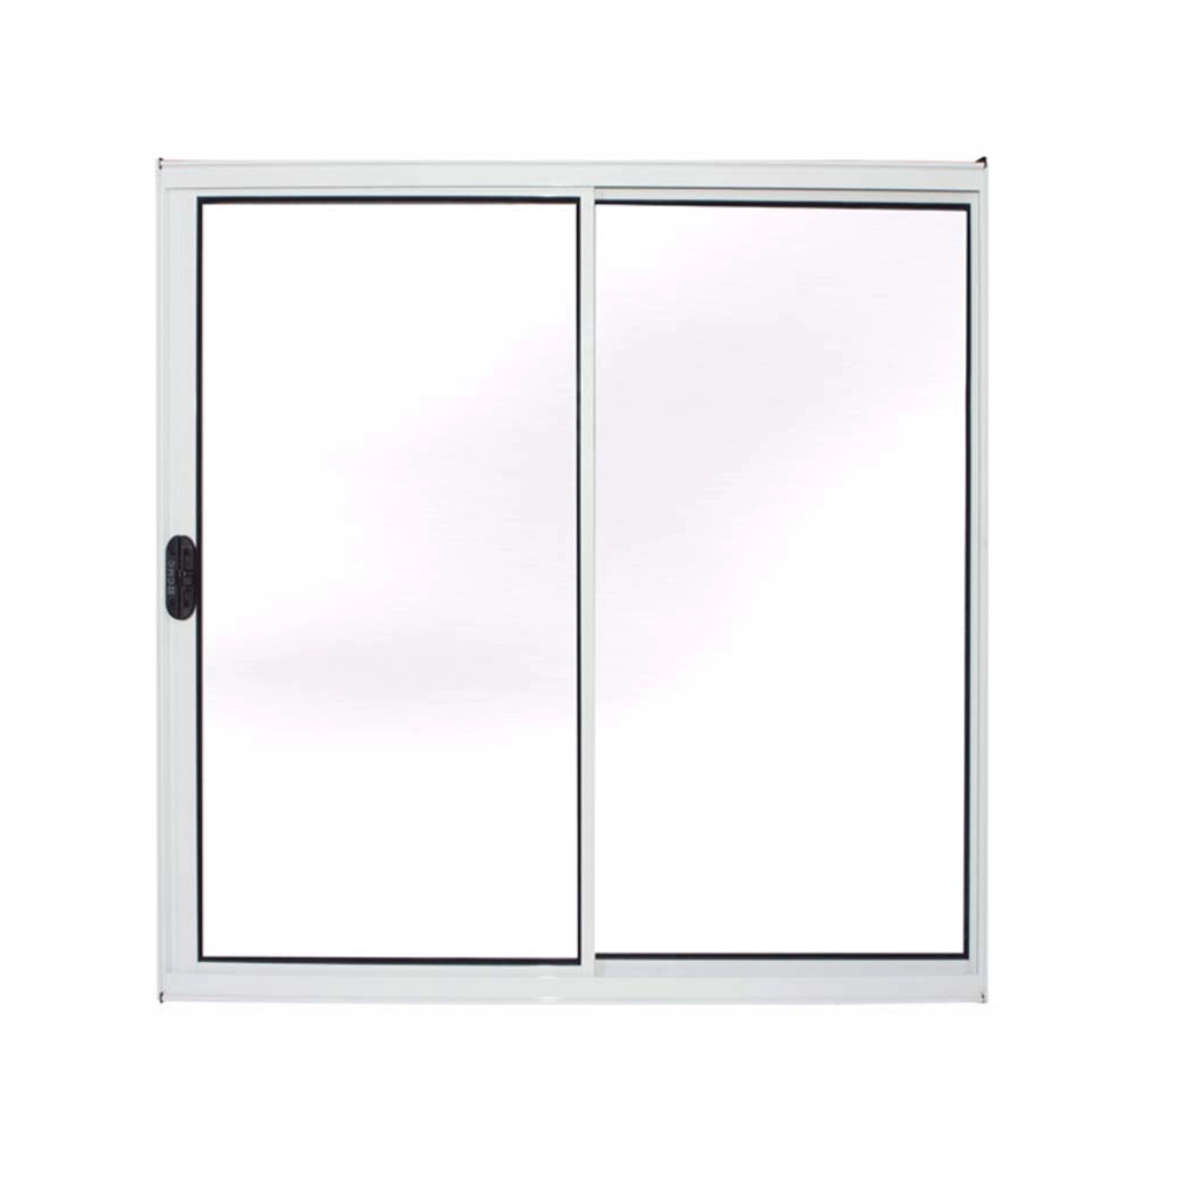 janela vitro sala alumínio branco 100x120 s/grade 2fls - 2